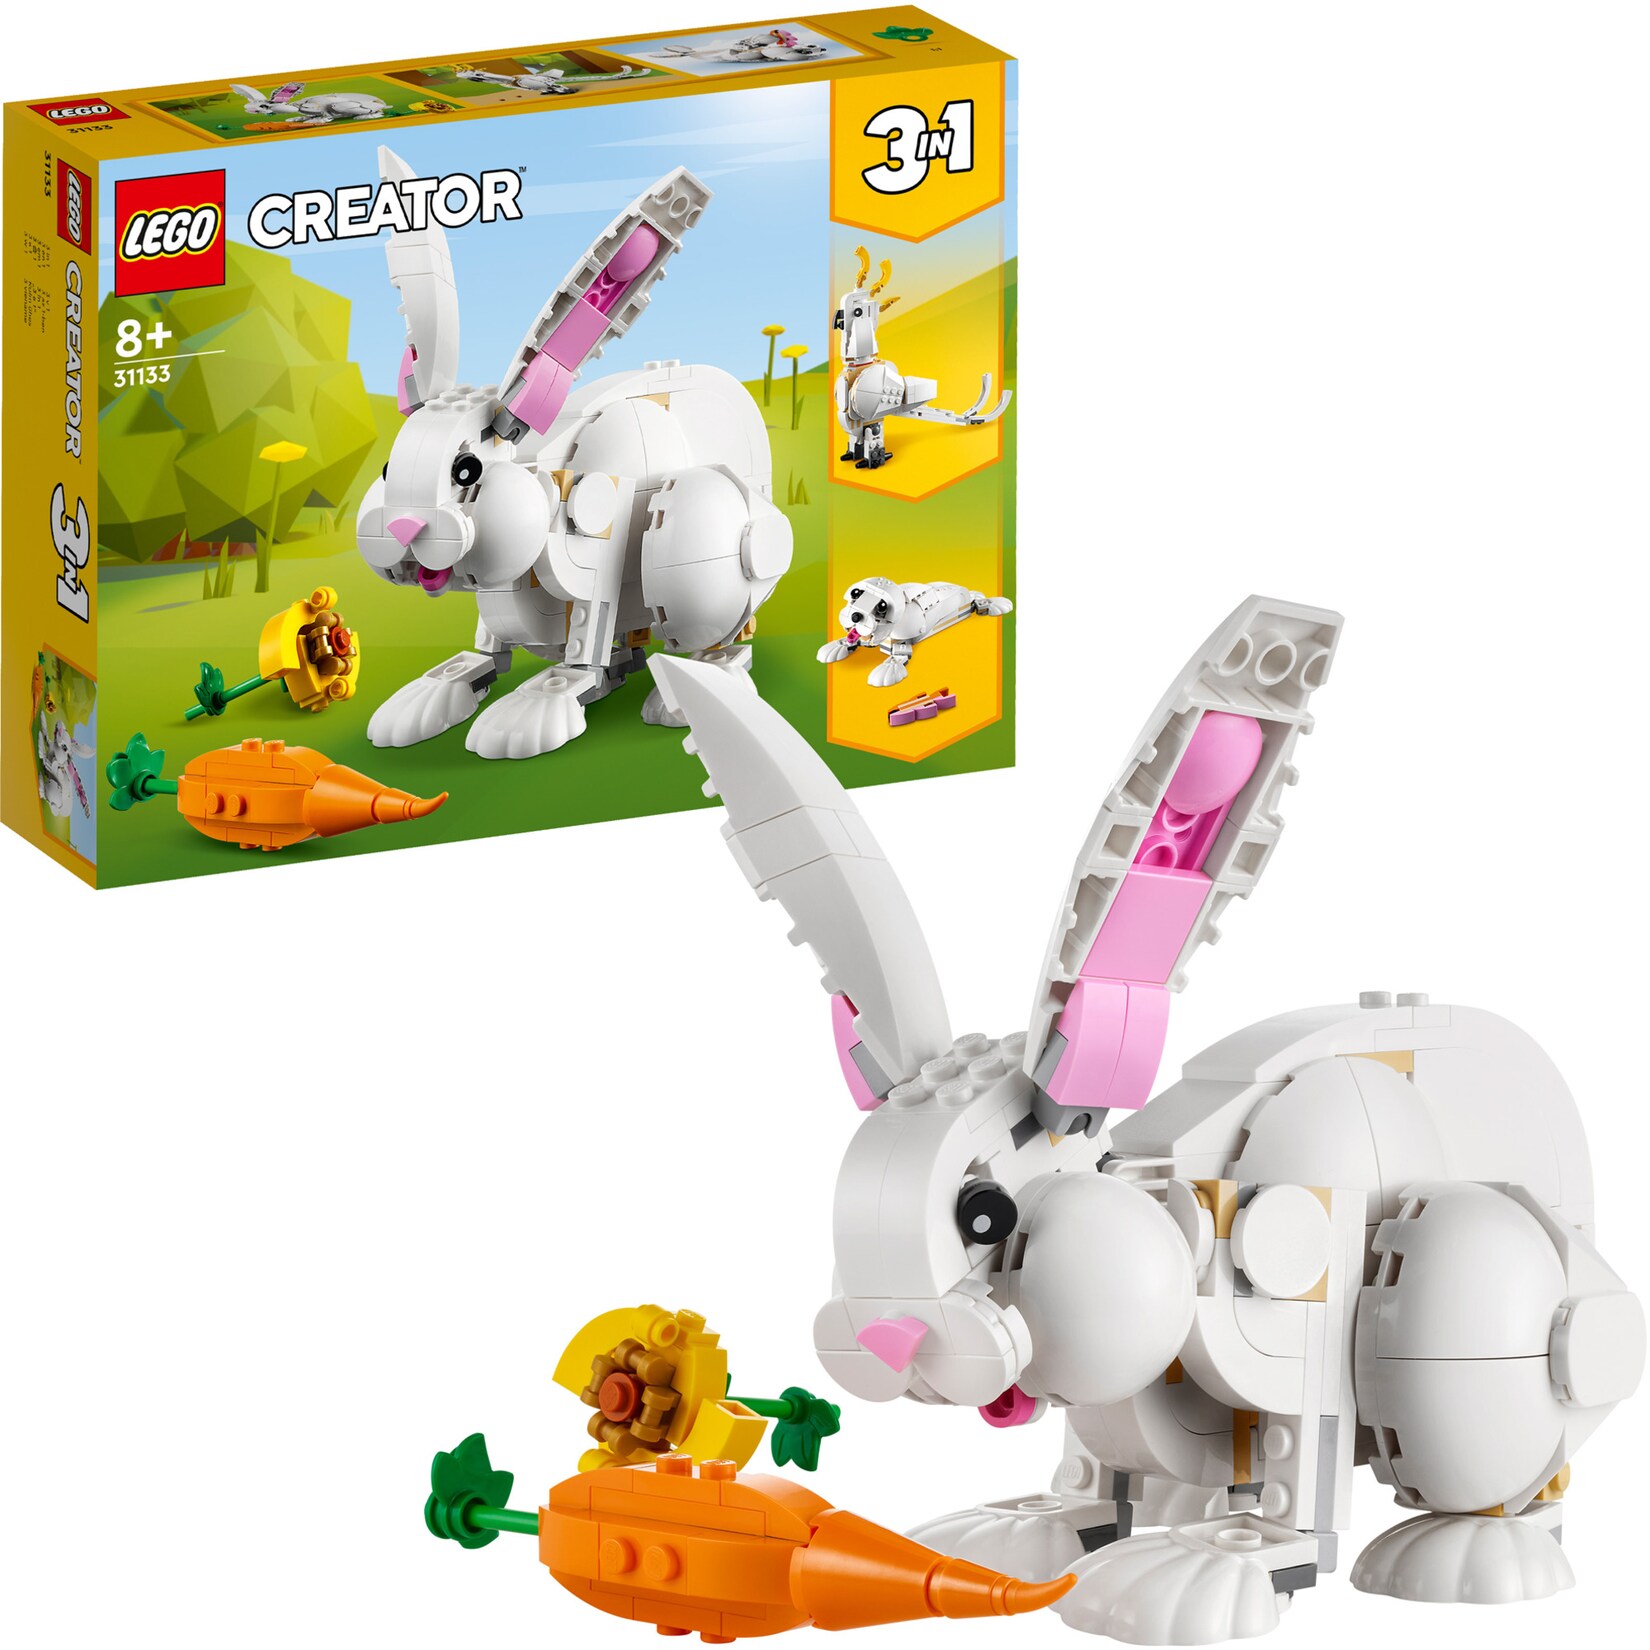 LEGO Konstruktionsspielzeug Creator 3-in-1 Weißer Hase